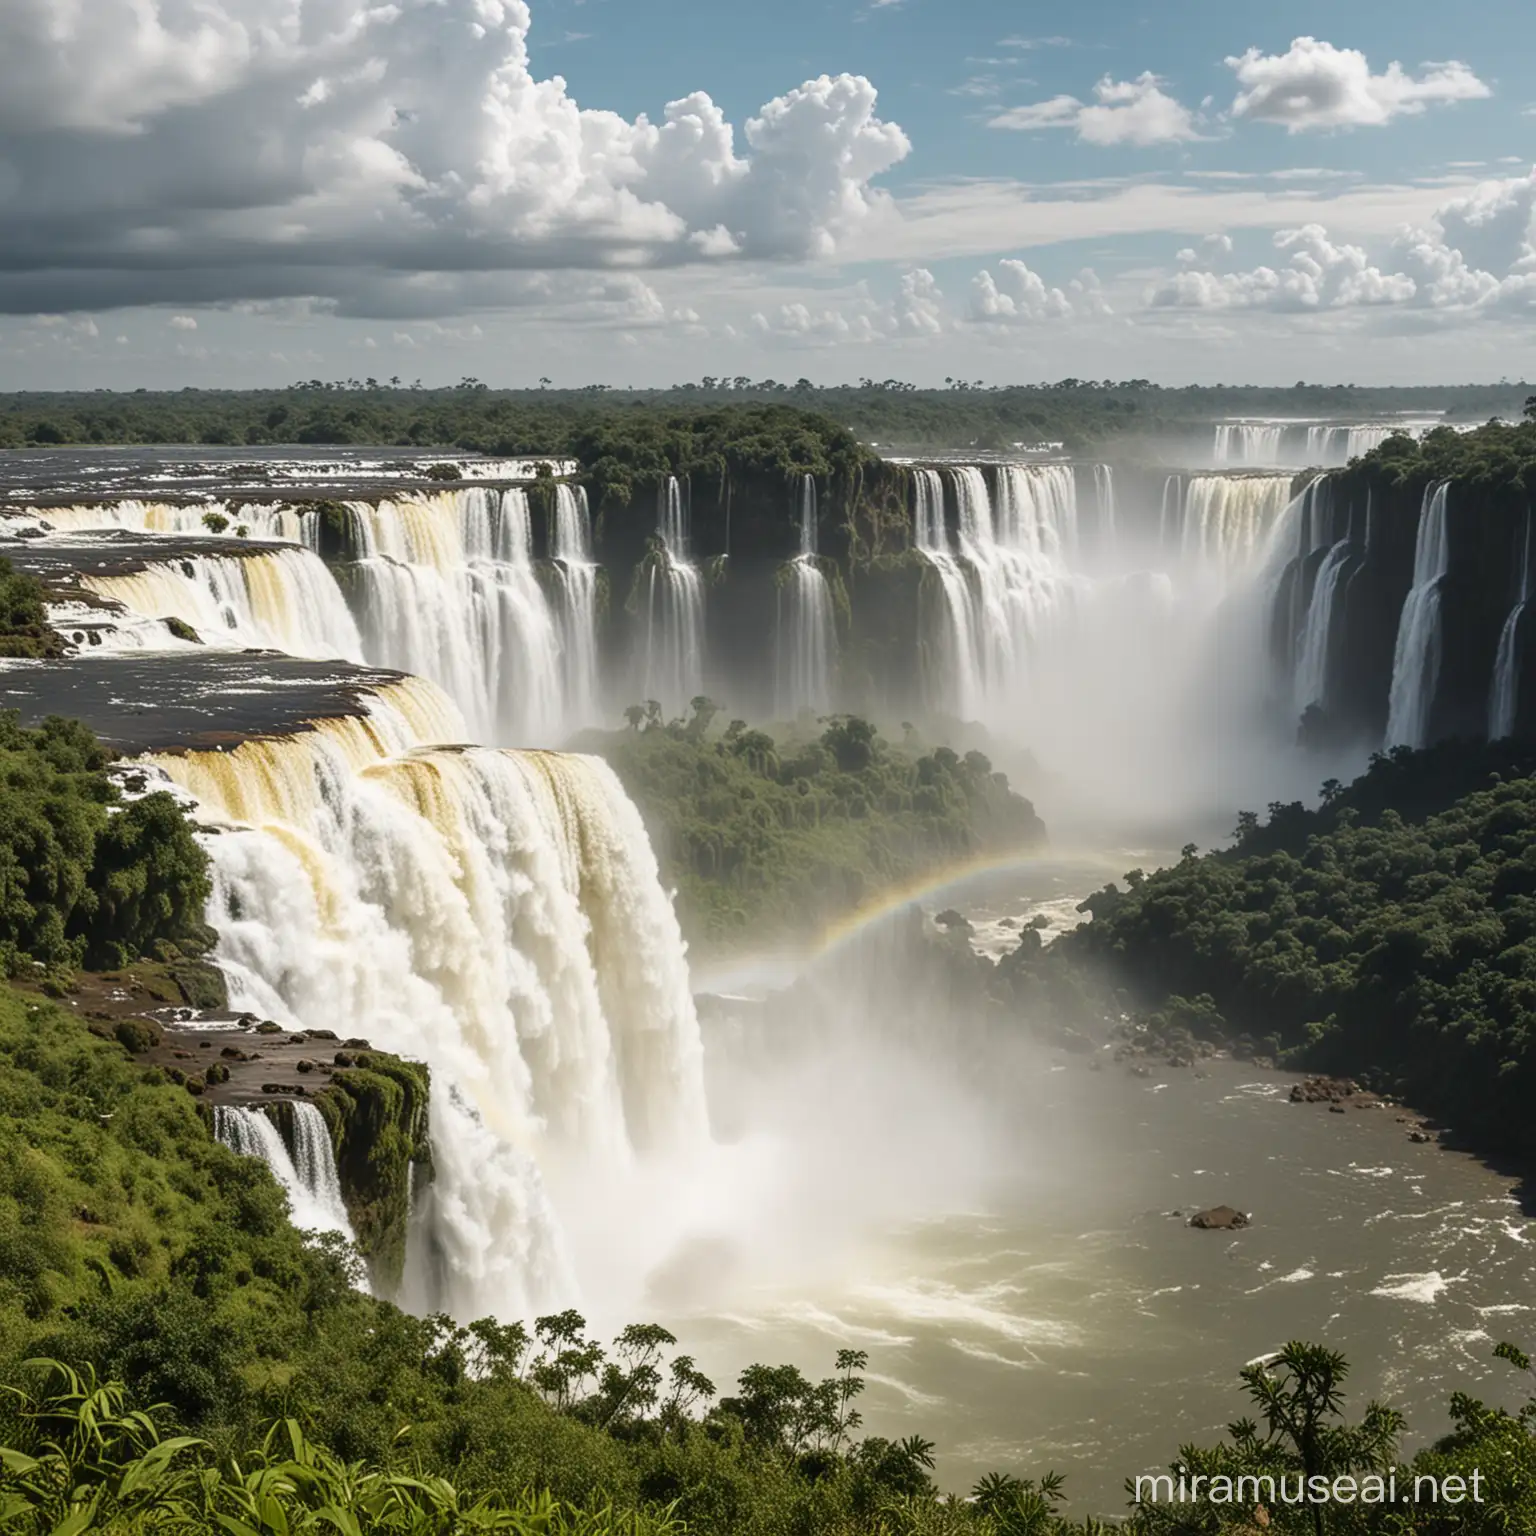 Uma paisagem panorâmica das Cataratas do Iguaçu, destacando sua beleza natural e imponência, com o logo do Summit Cataratas discretamente no canto inferior direito